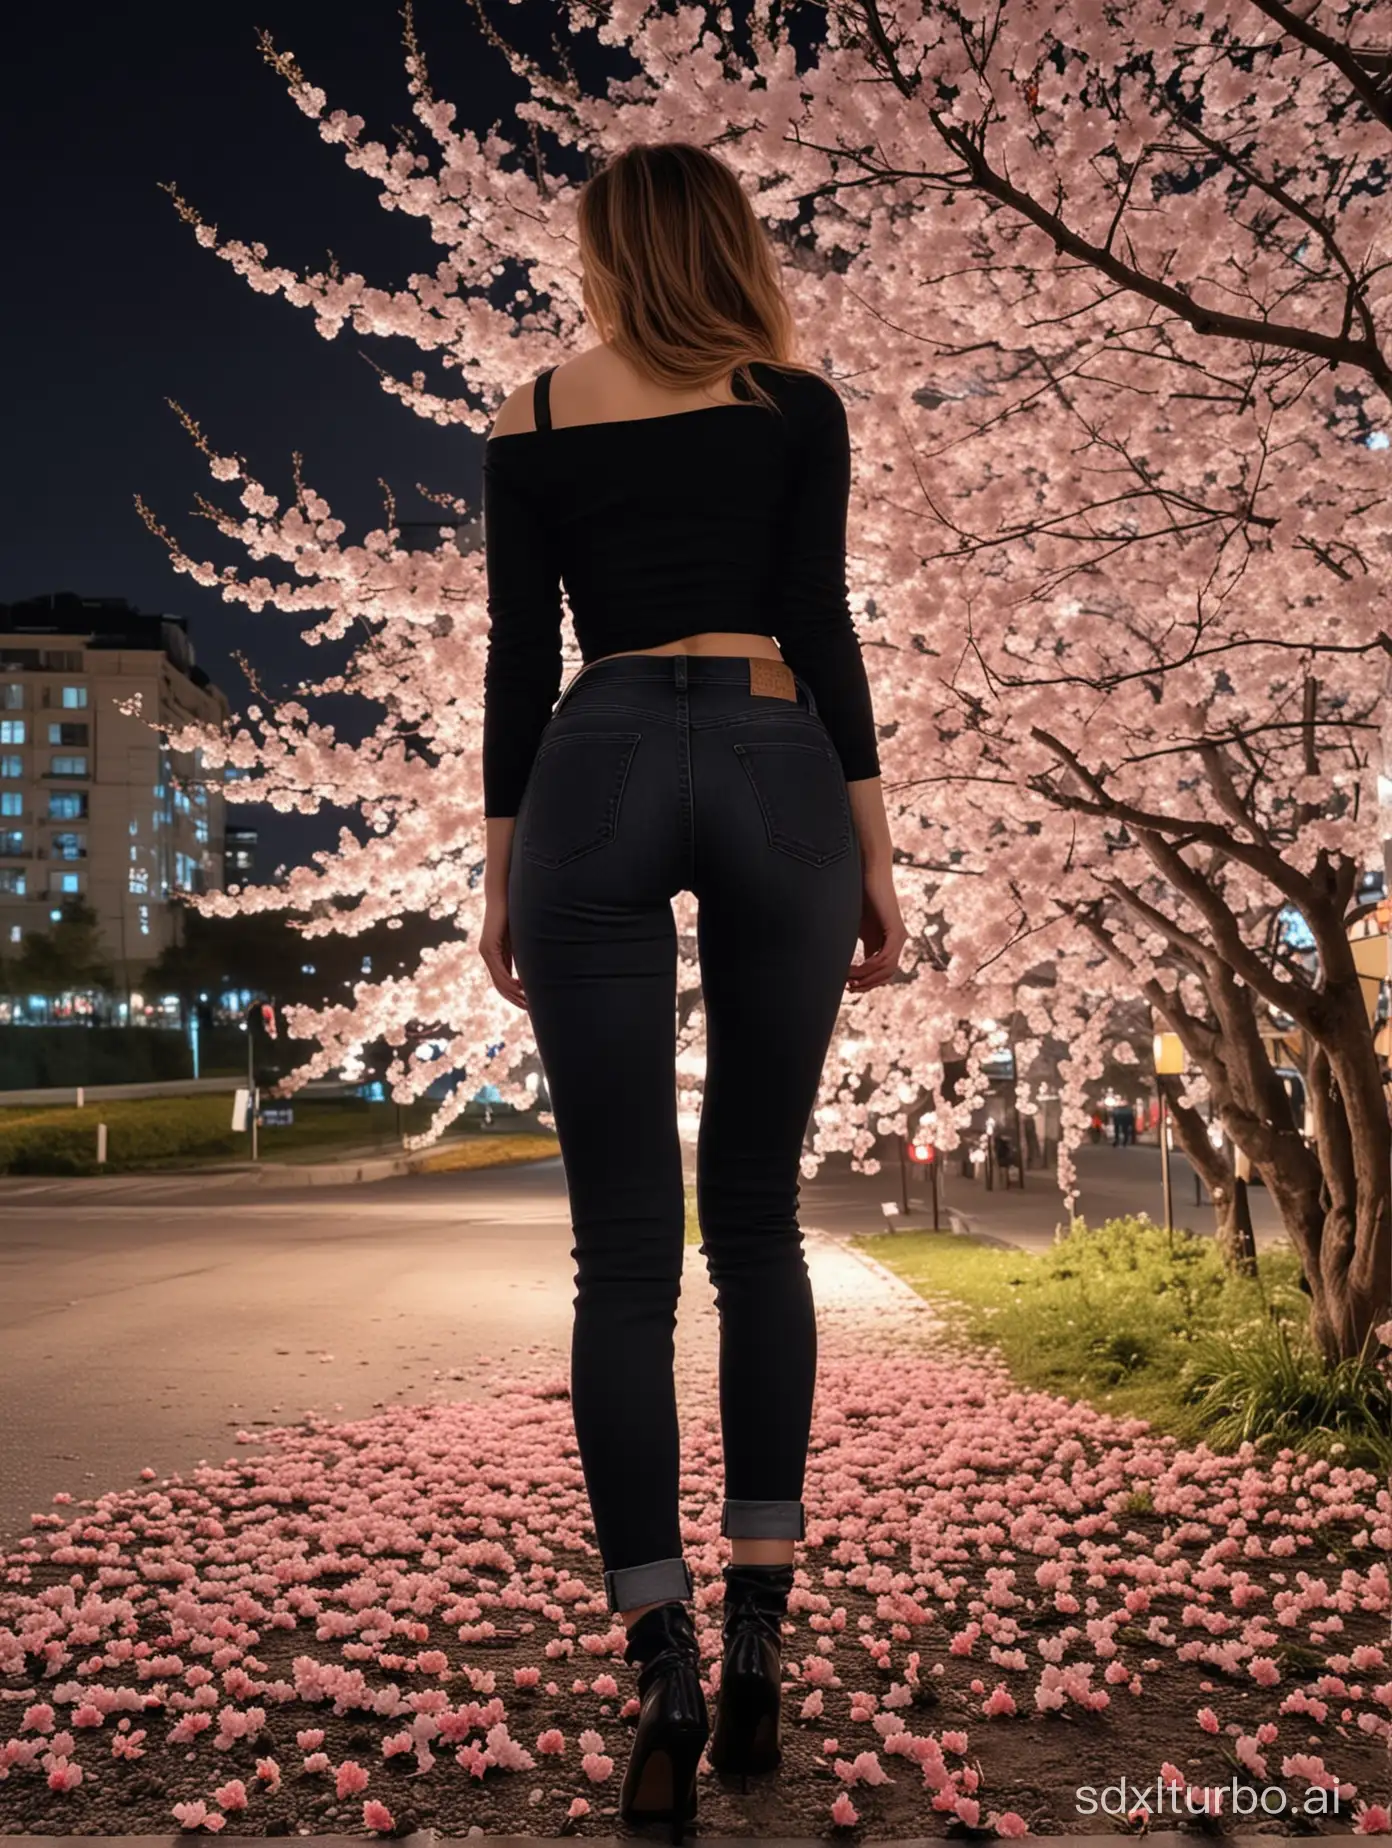 傑作、最高品質、超繊細、リアル、夜の桜🌸、ライトアップ、woman in the back in black jeans